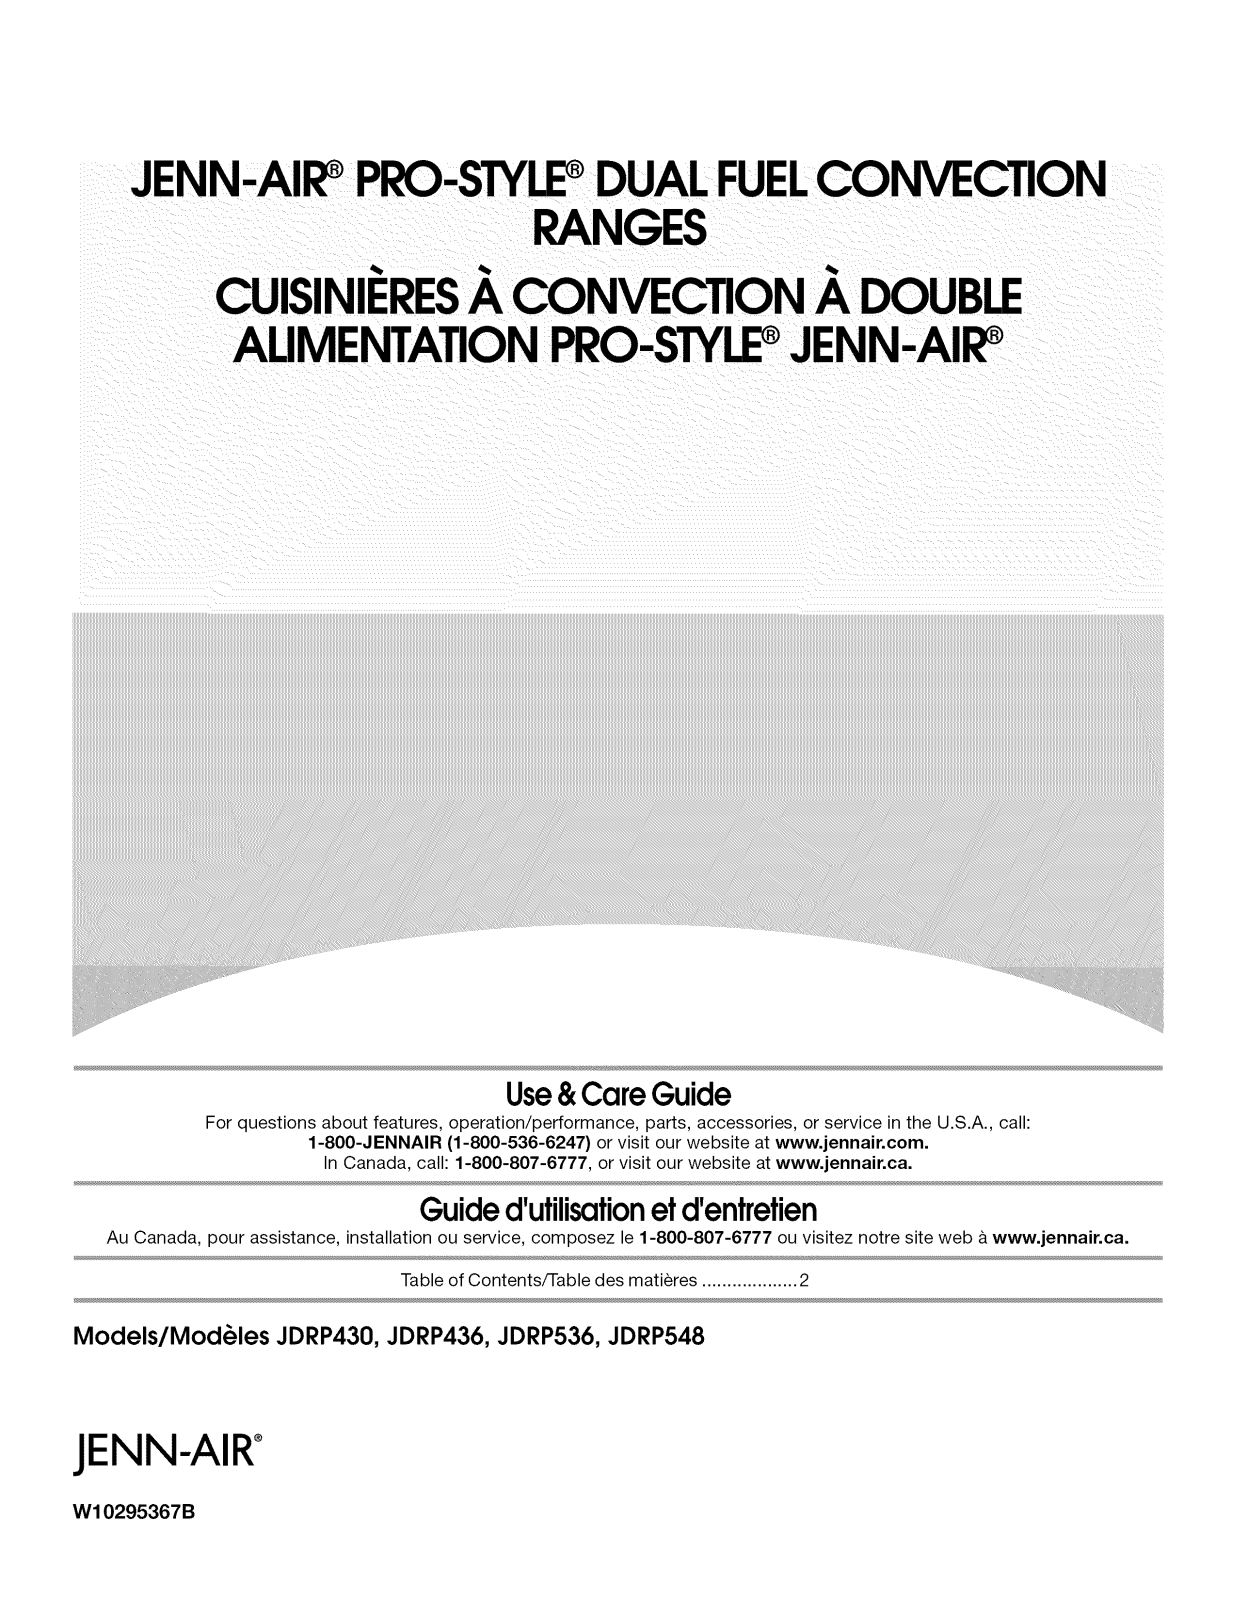 Jenn-Air JDRP548WP01, JDRP536WP01, JDRP536WP00, JDRP436WP01, JDRP436WP00 Owner’s Manual